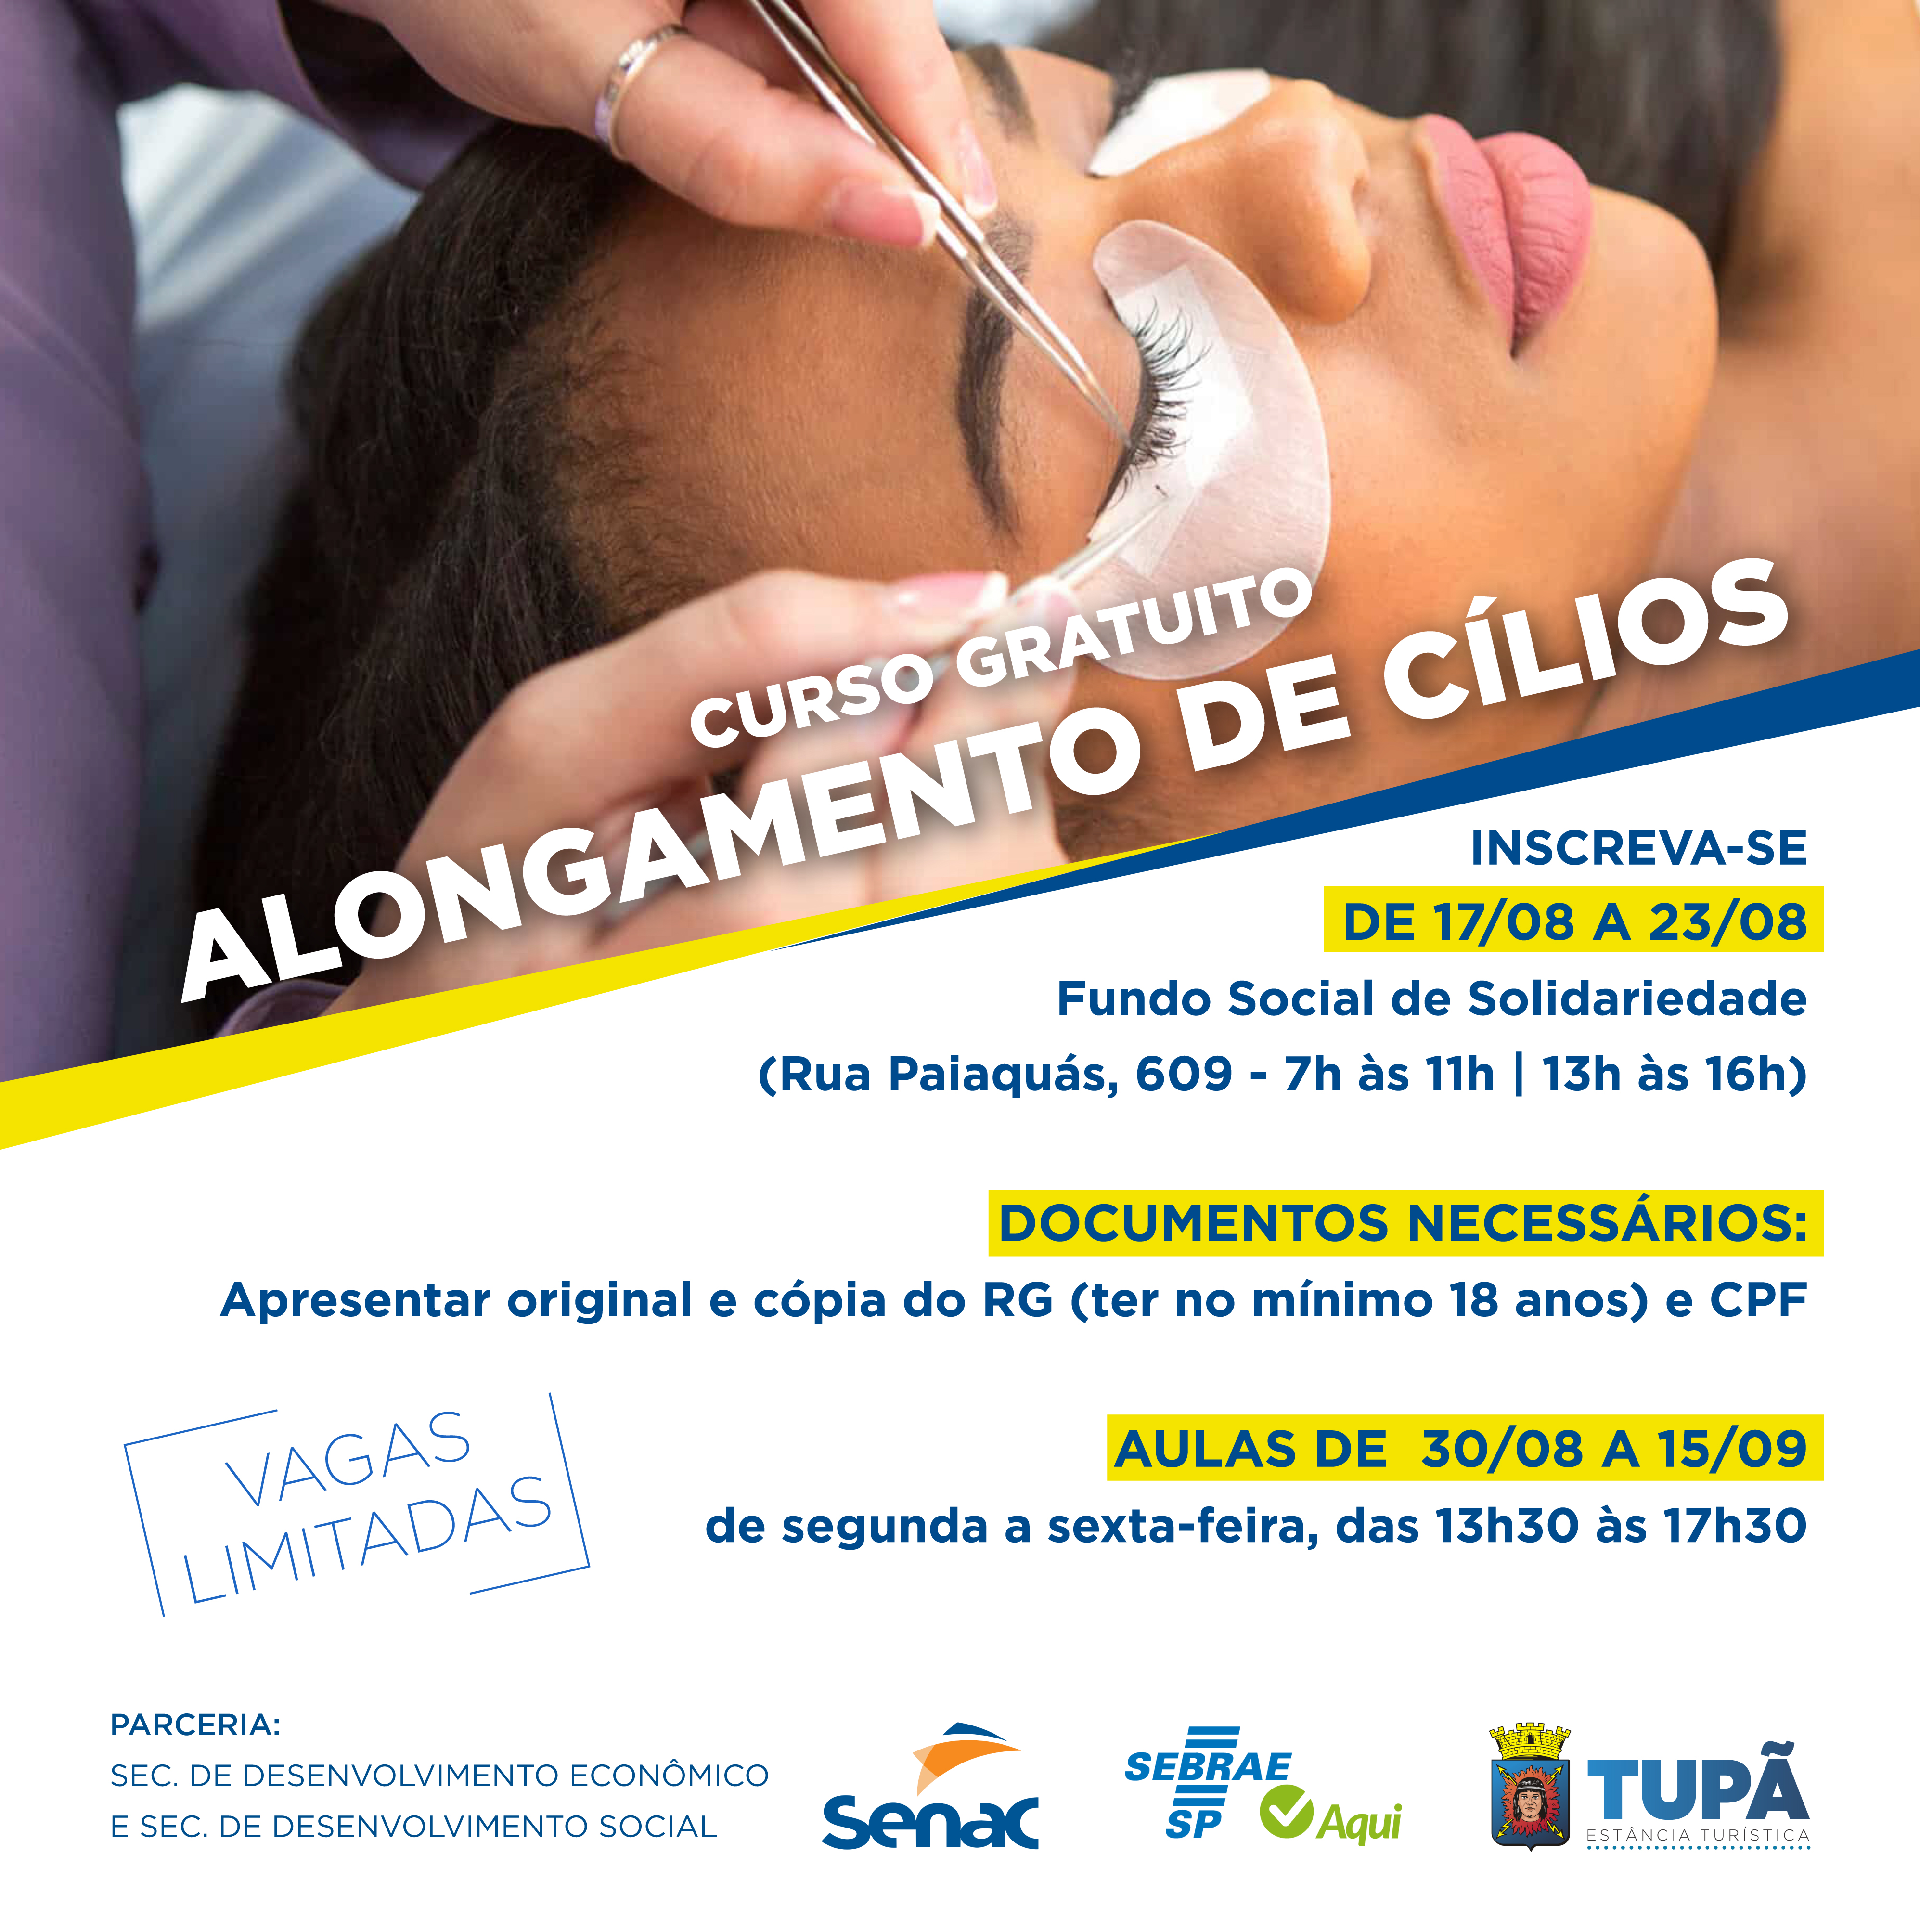 Prefeitura de Tupã e Sebrae Aqui oferecem curso de alongamento de cílios